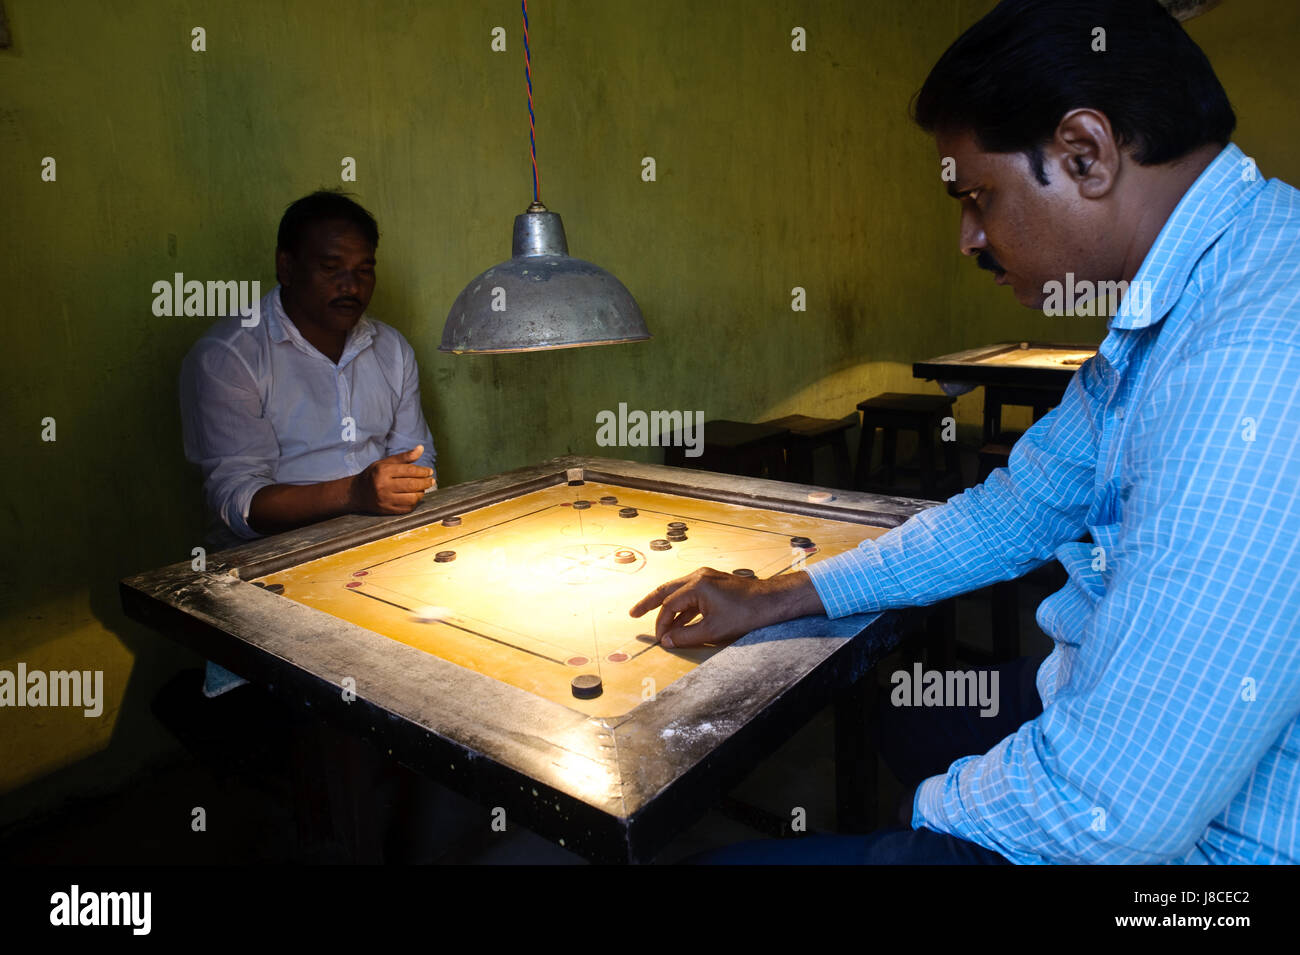 Deux hommes jouent aux carom dans une salle de jeux (Inde) Banque D'Images